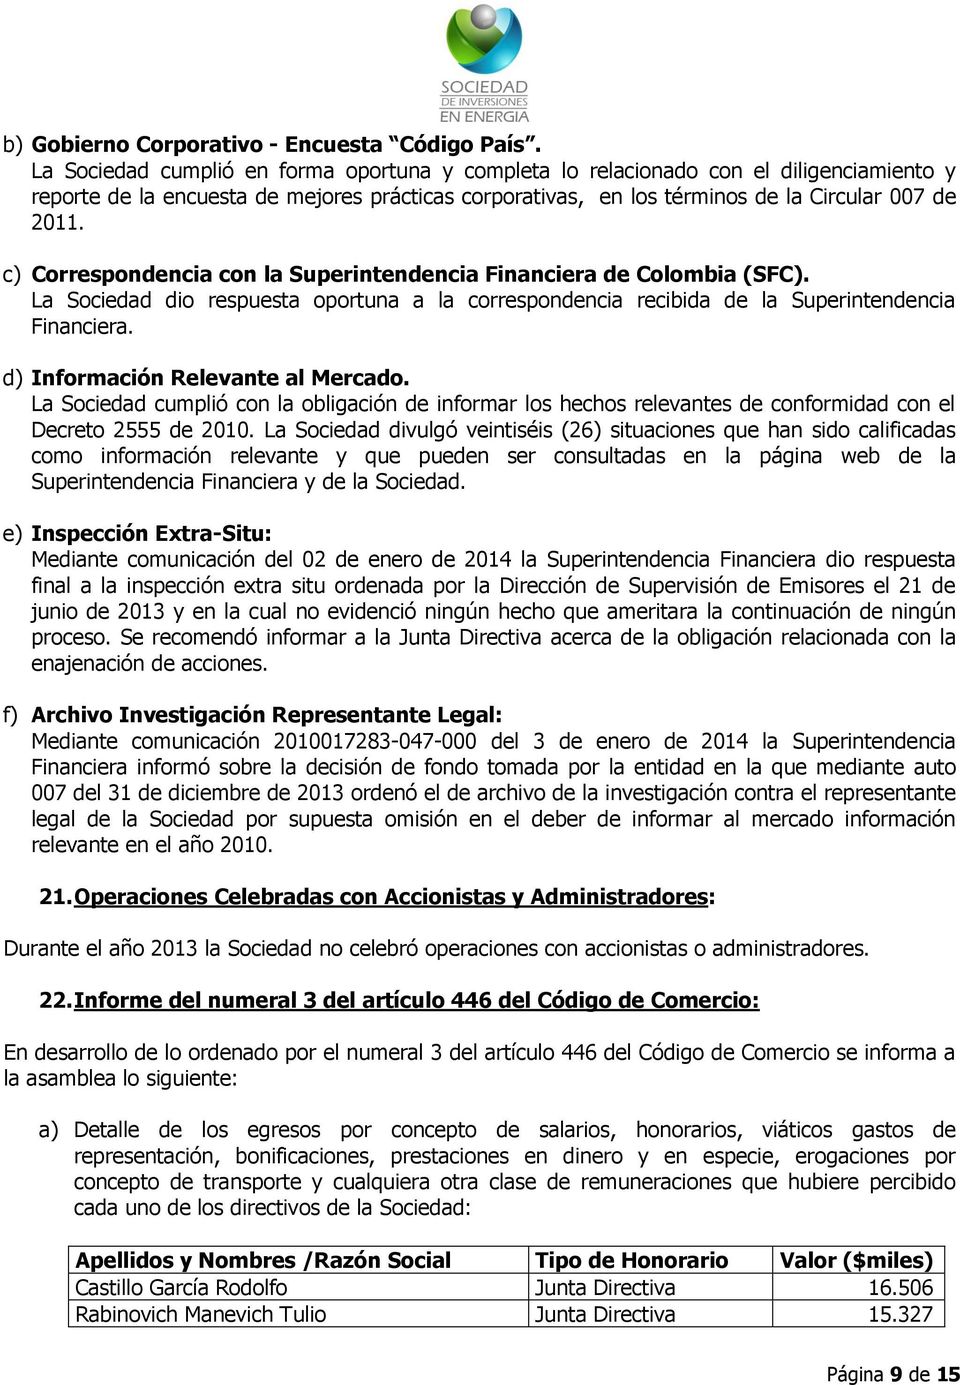 c) Correspondencia con la Superintendencia Financiera de Colombia (SFC). La Sociedad dio respuesta oportuna a la correspondencia recibida de la Superintendencia Financiera.